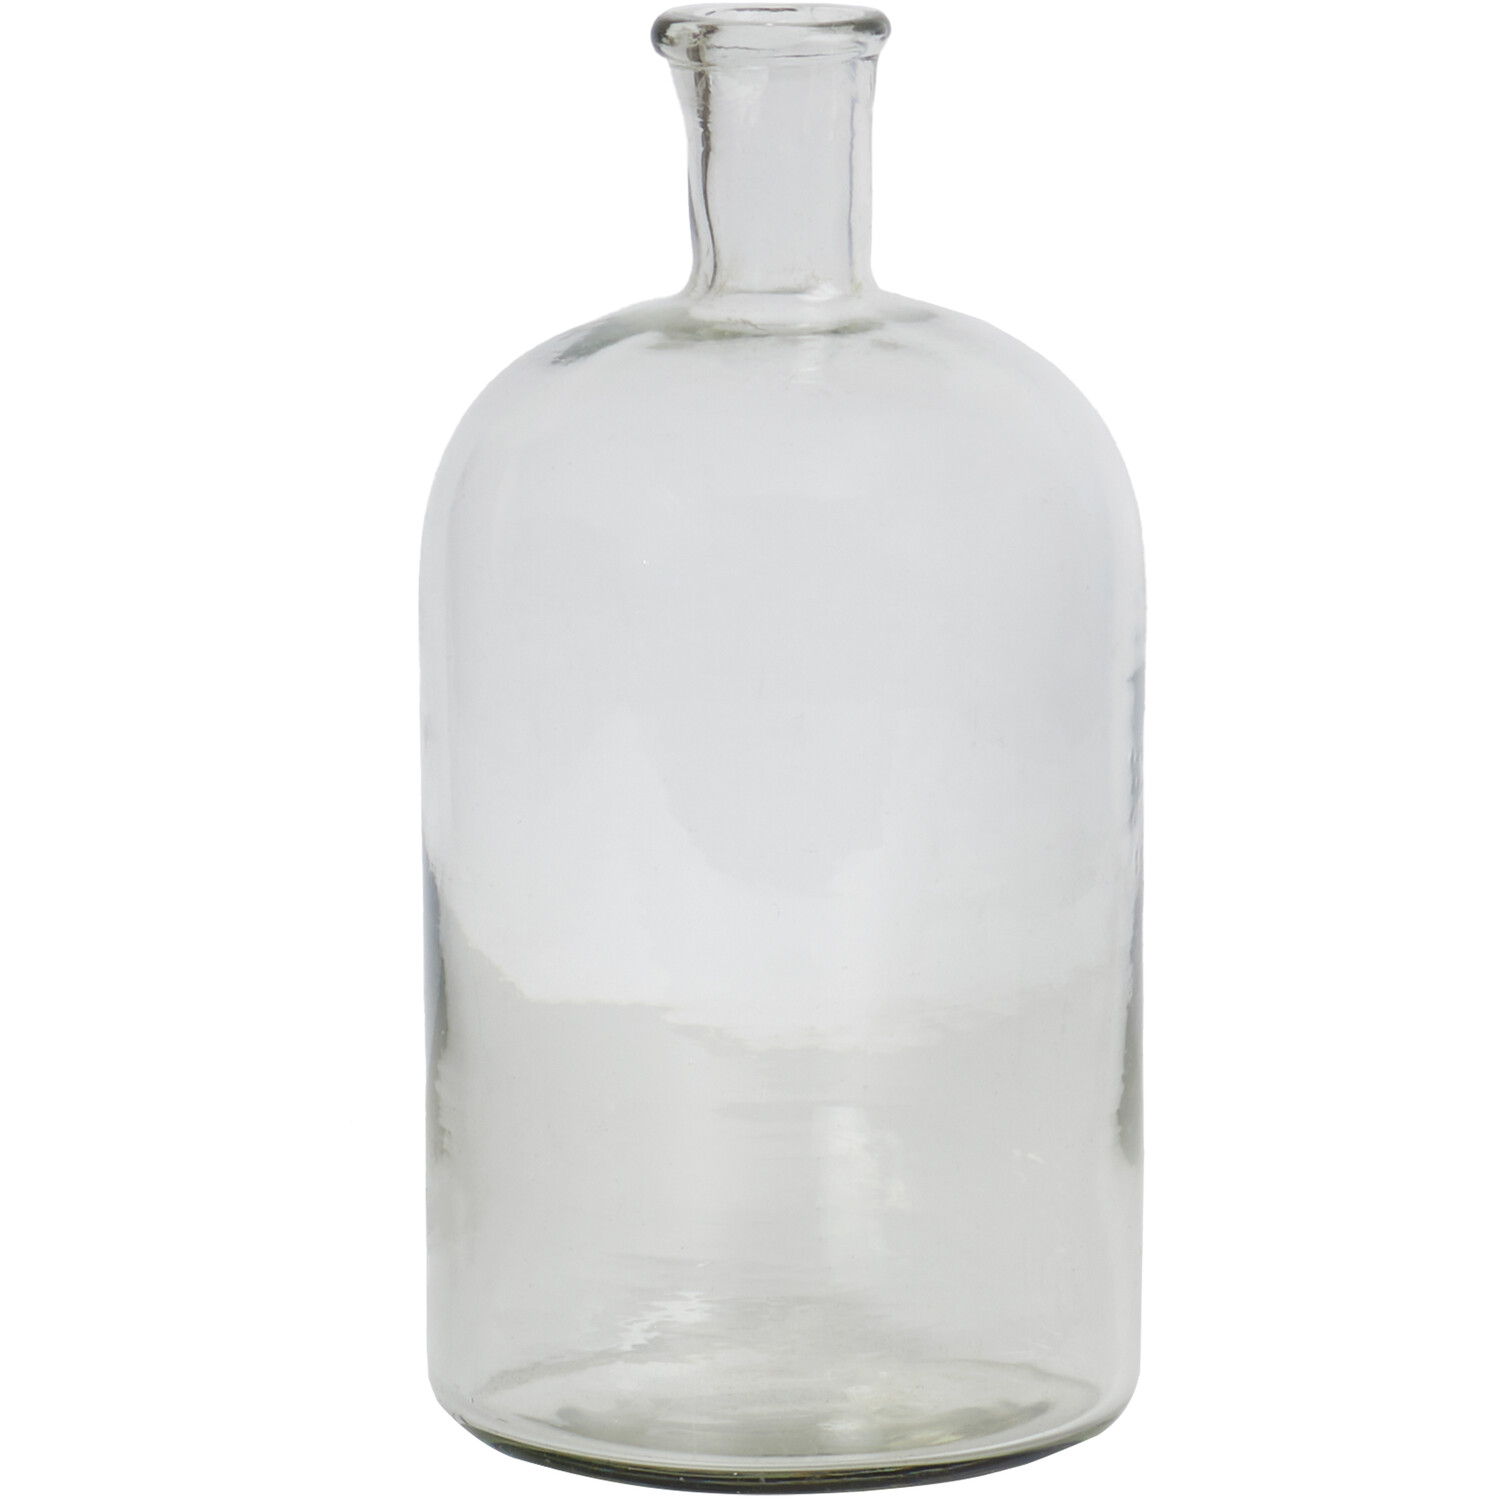 Bottleneck Glass Vase - Clear Image 1